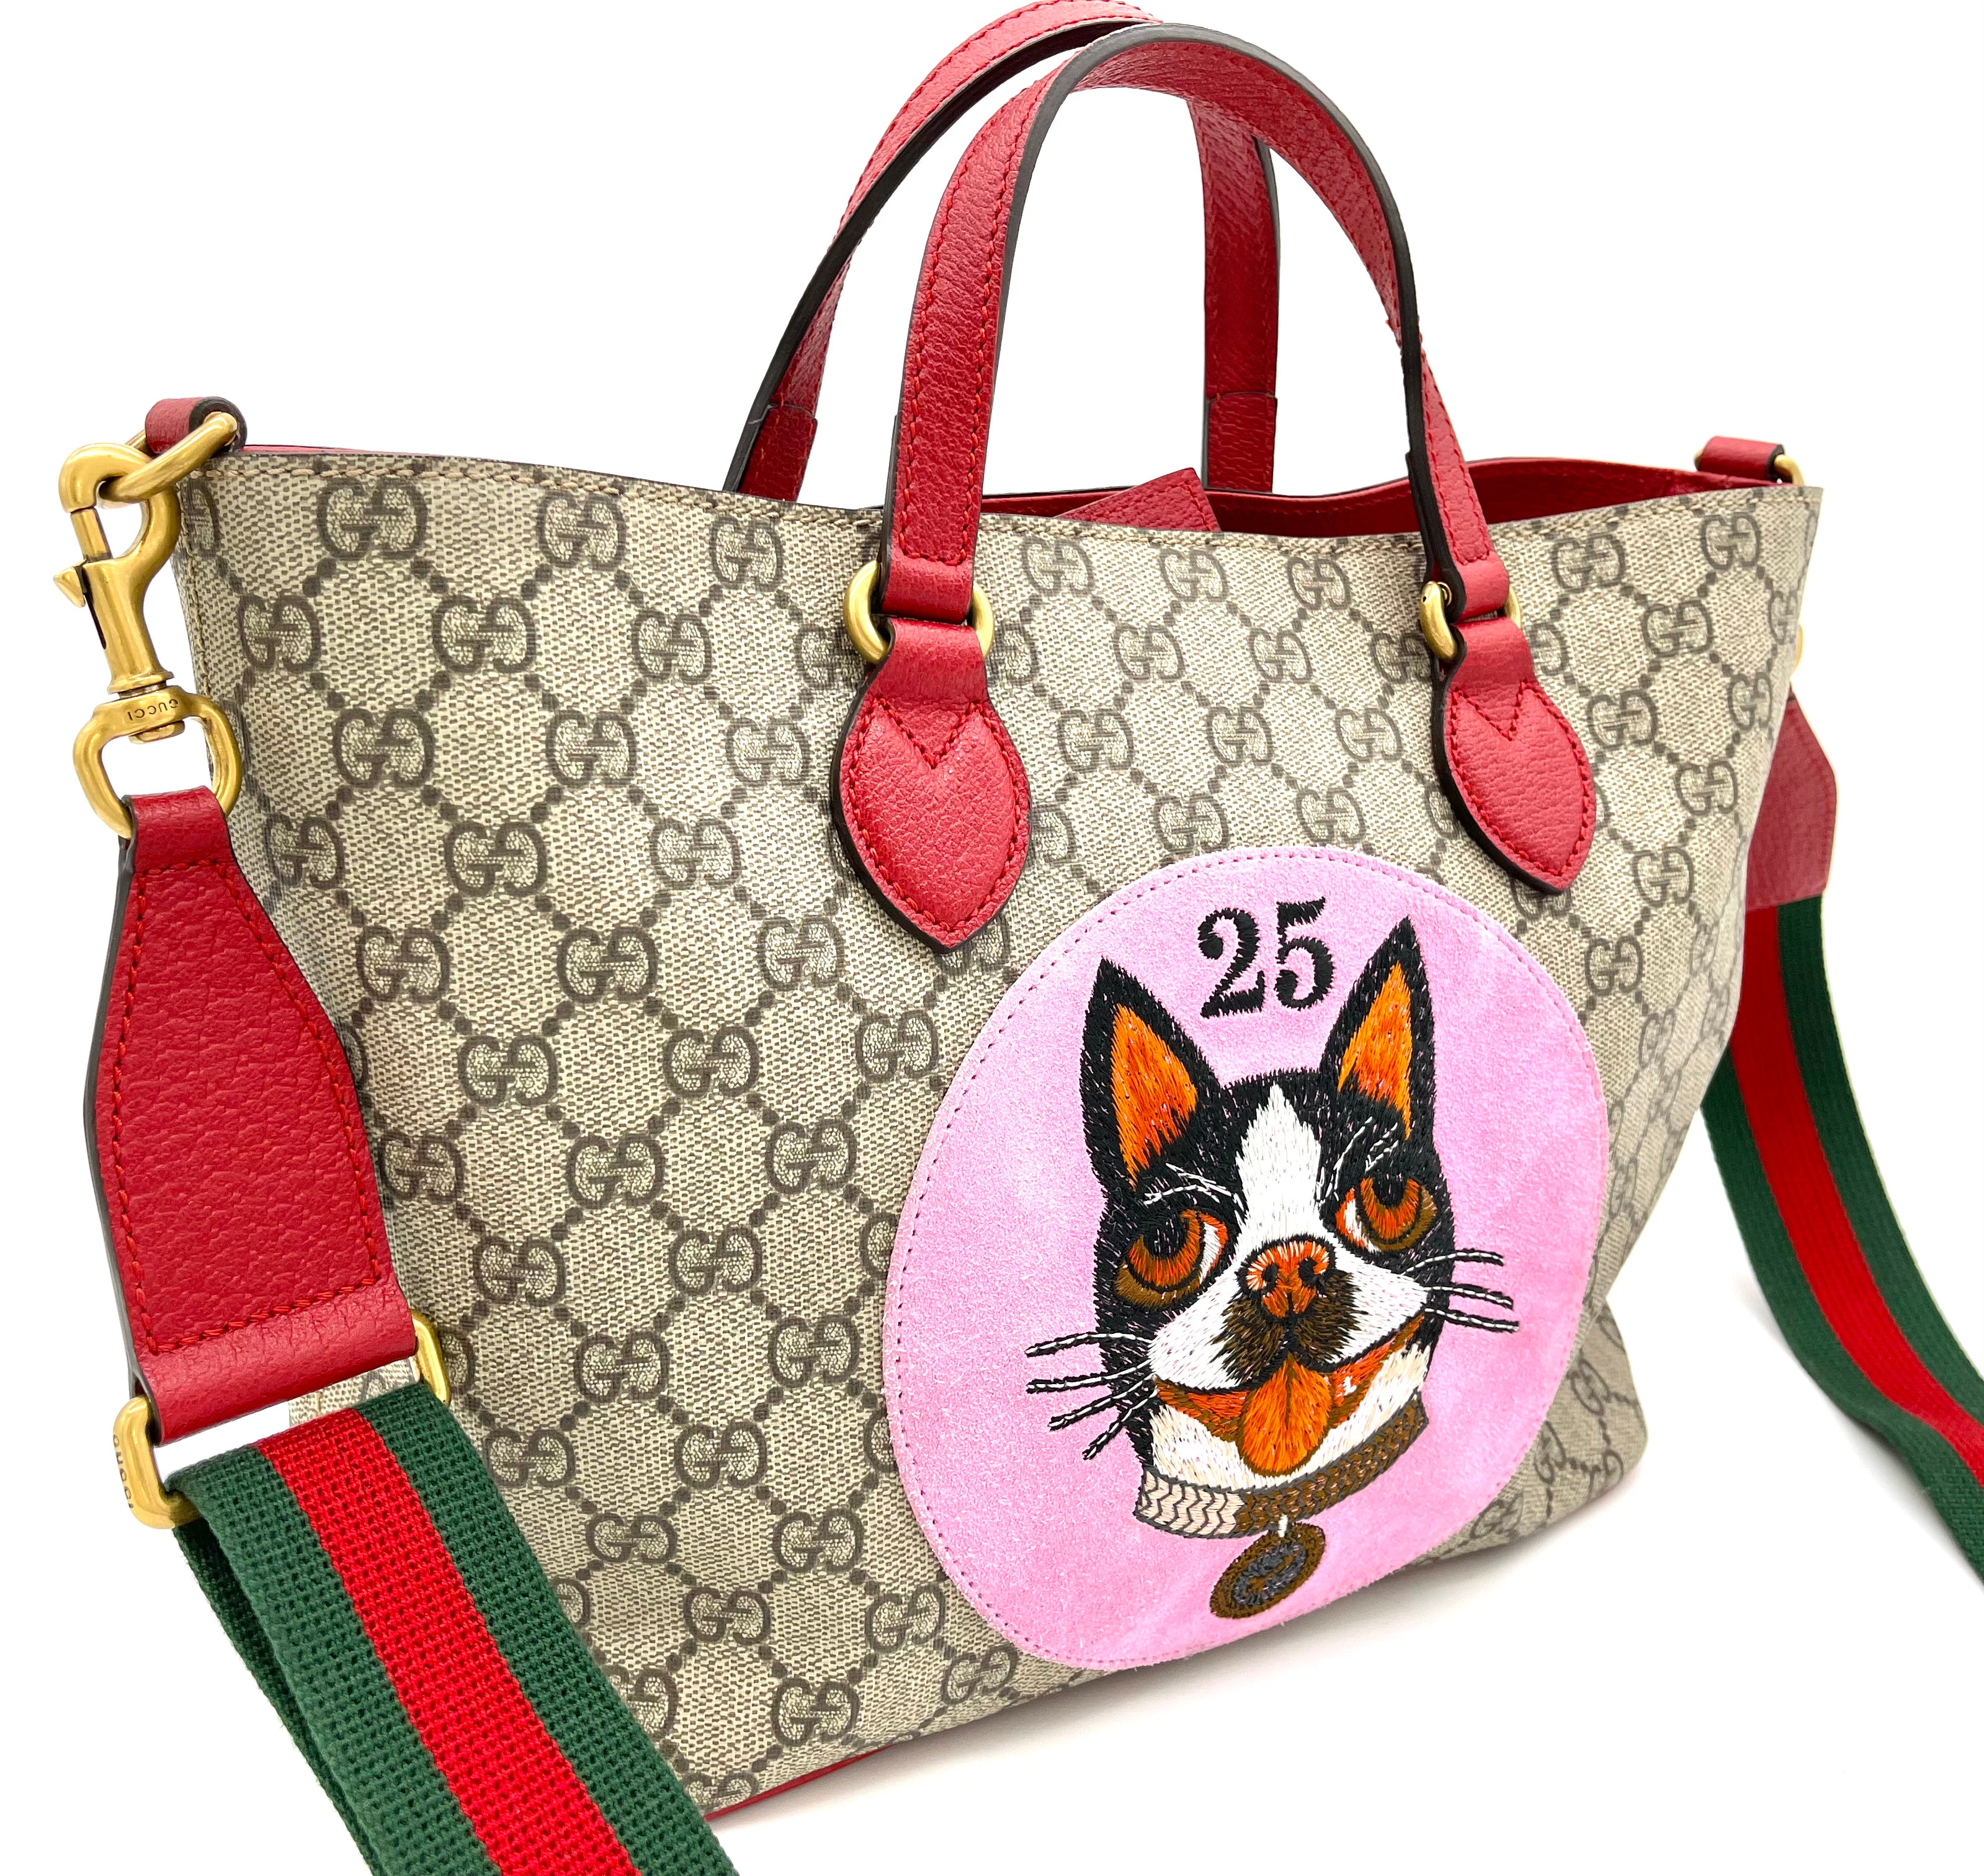 Gucci GG Supreme Monogram Mini Tote Bag